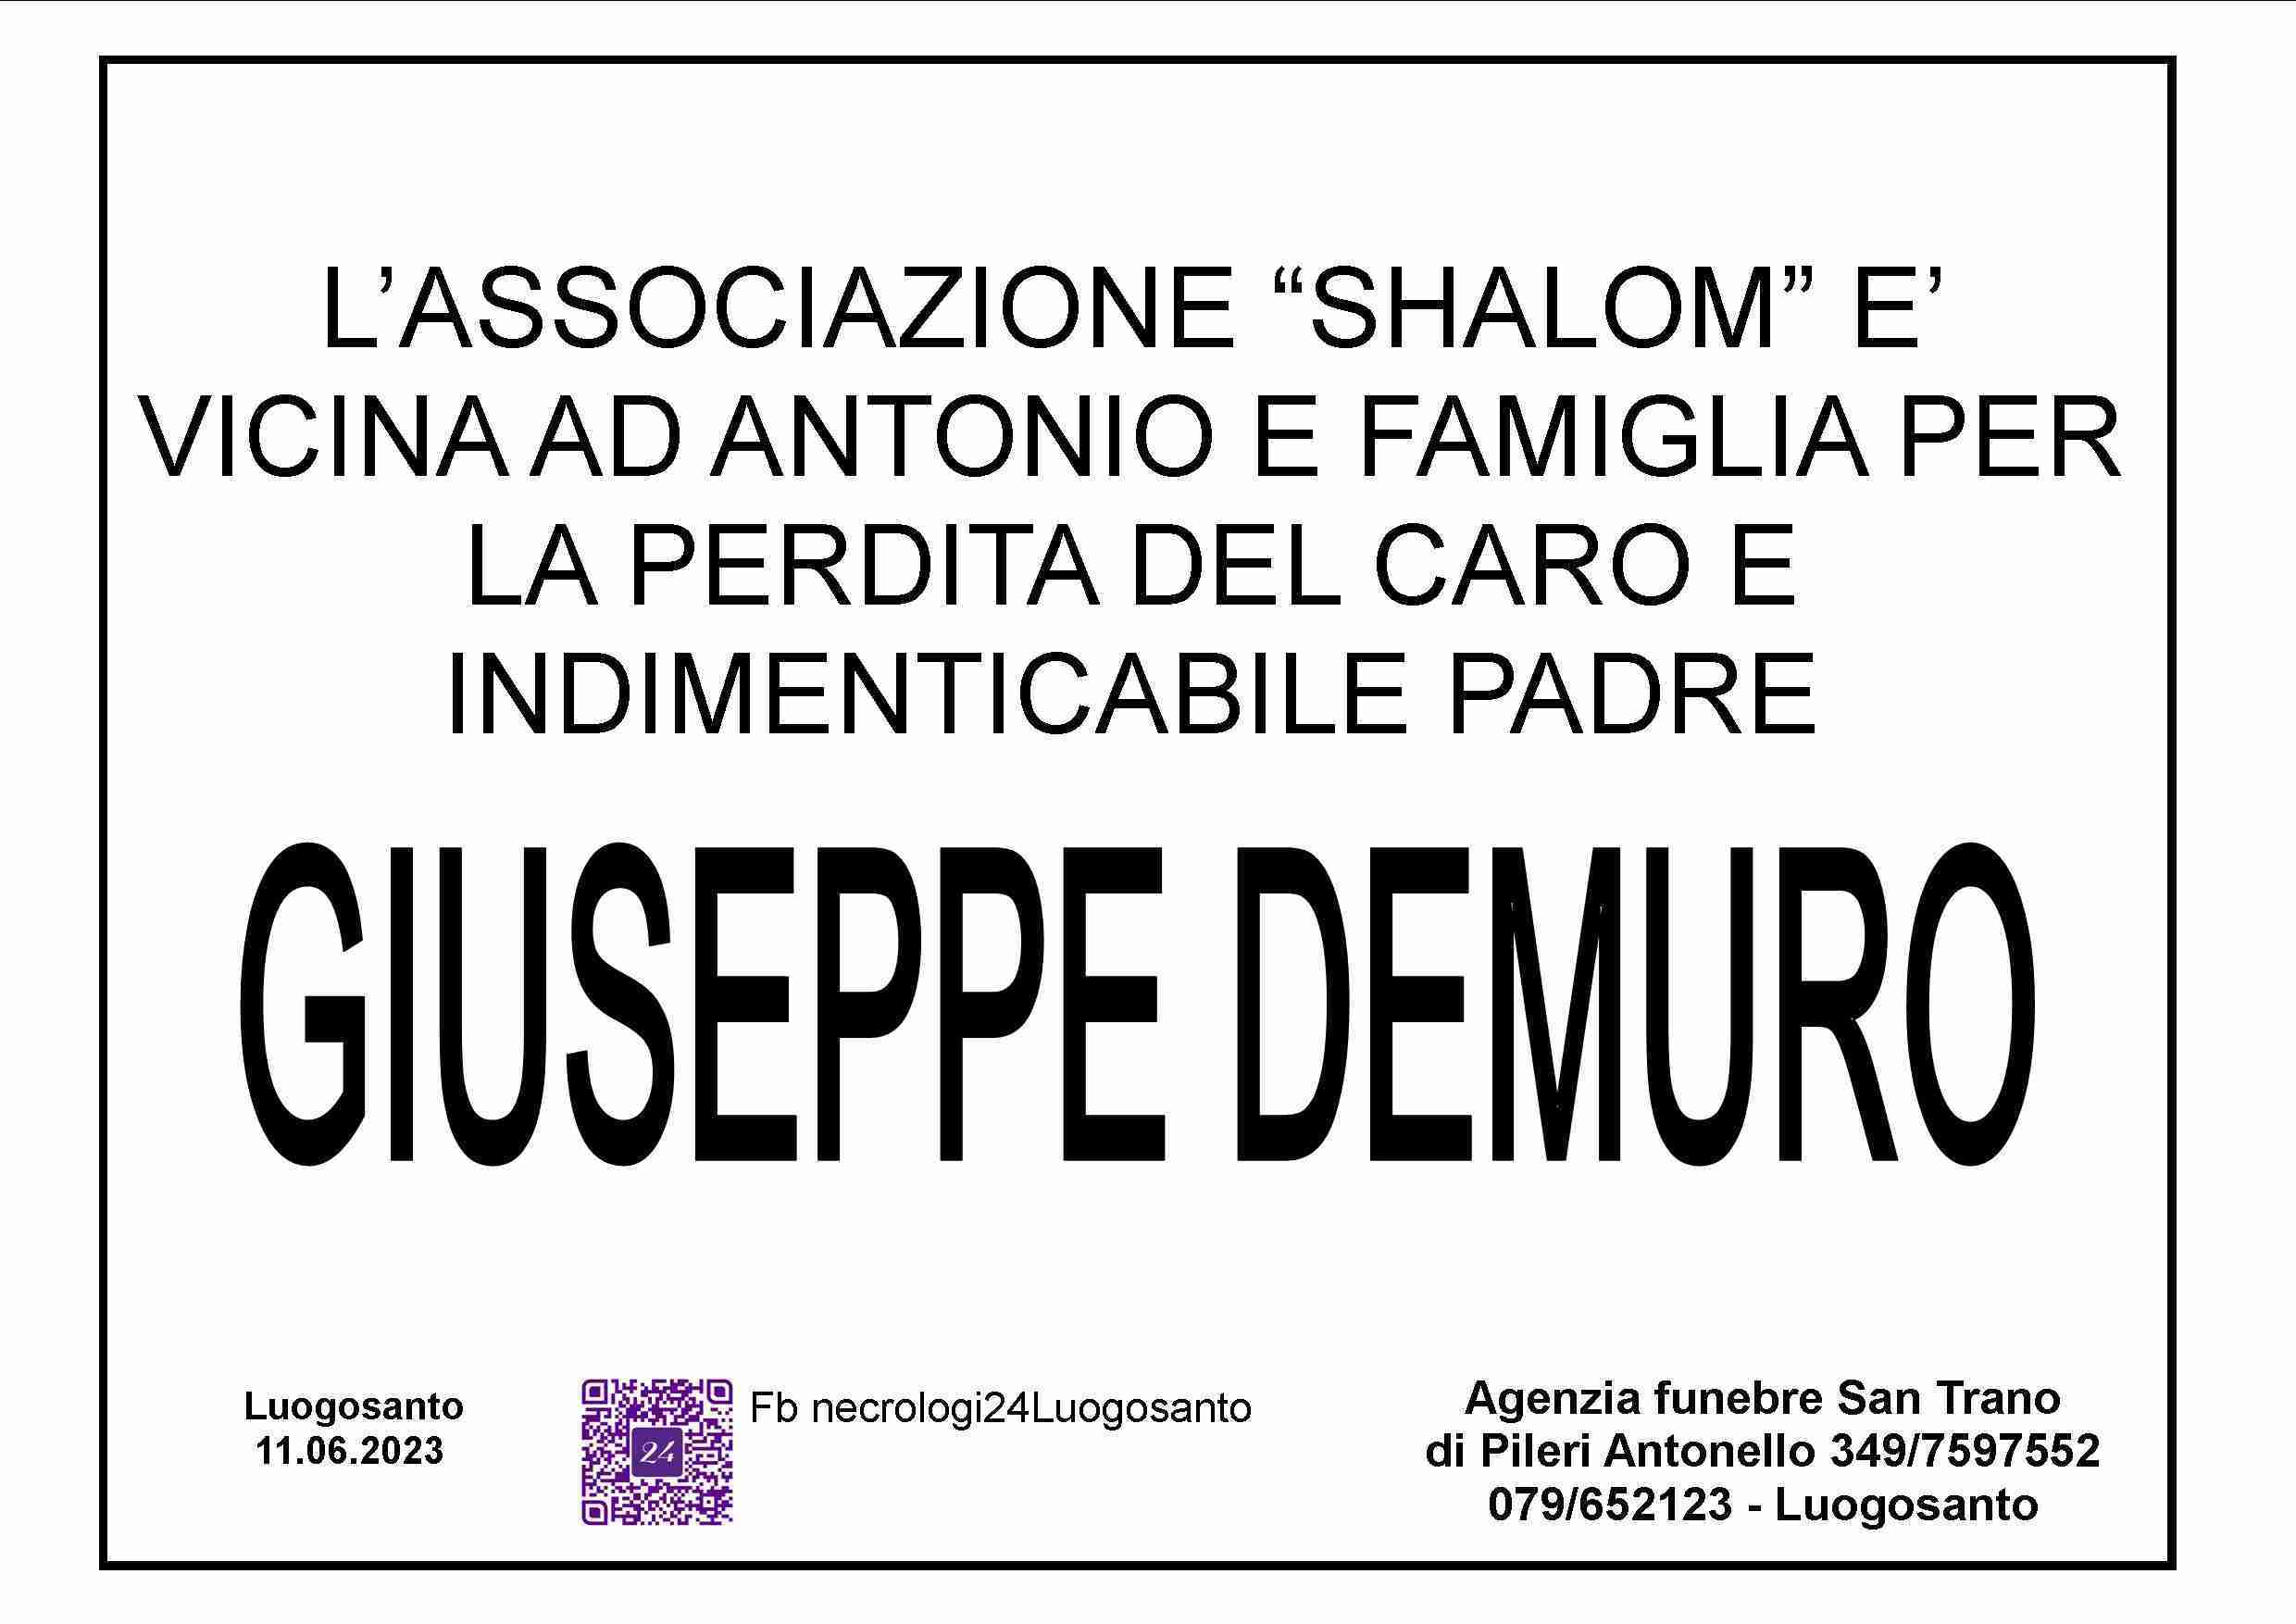 Giuseppe Demuro